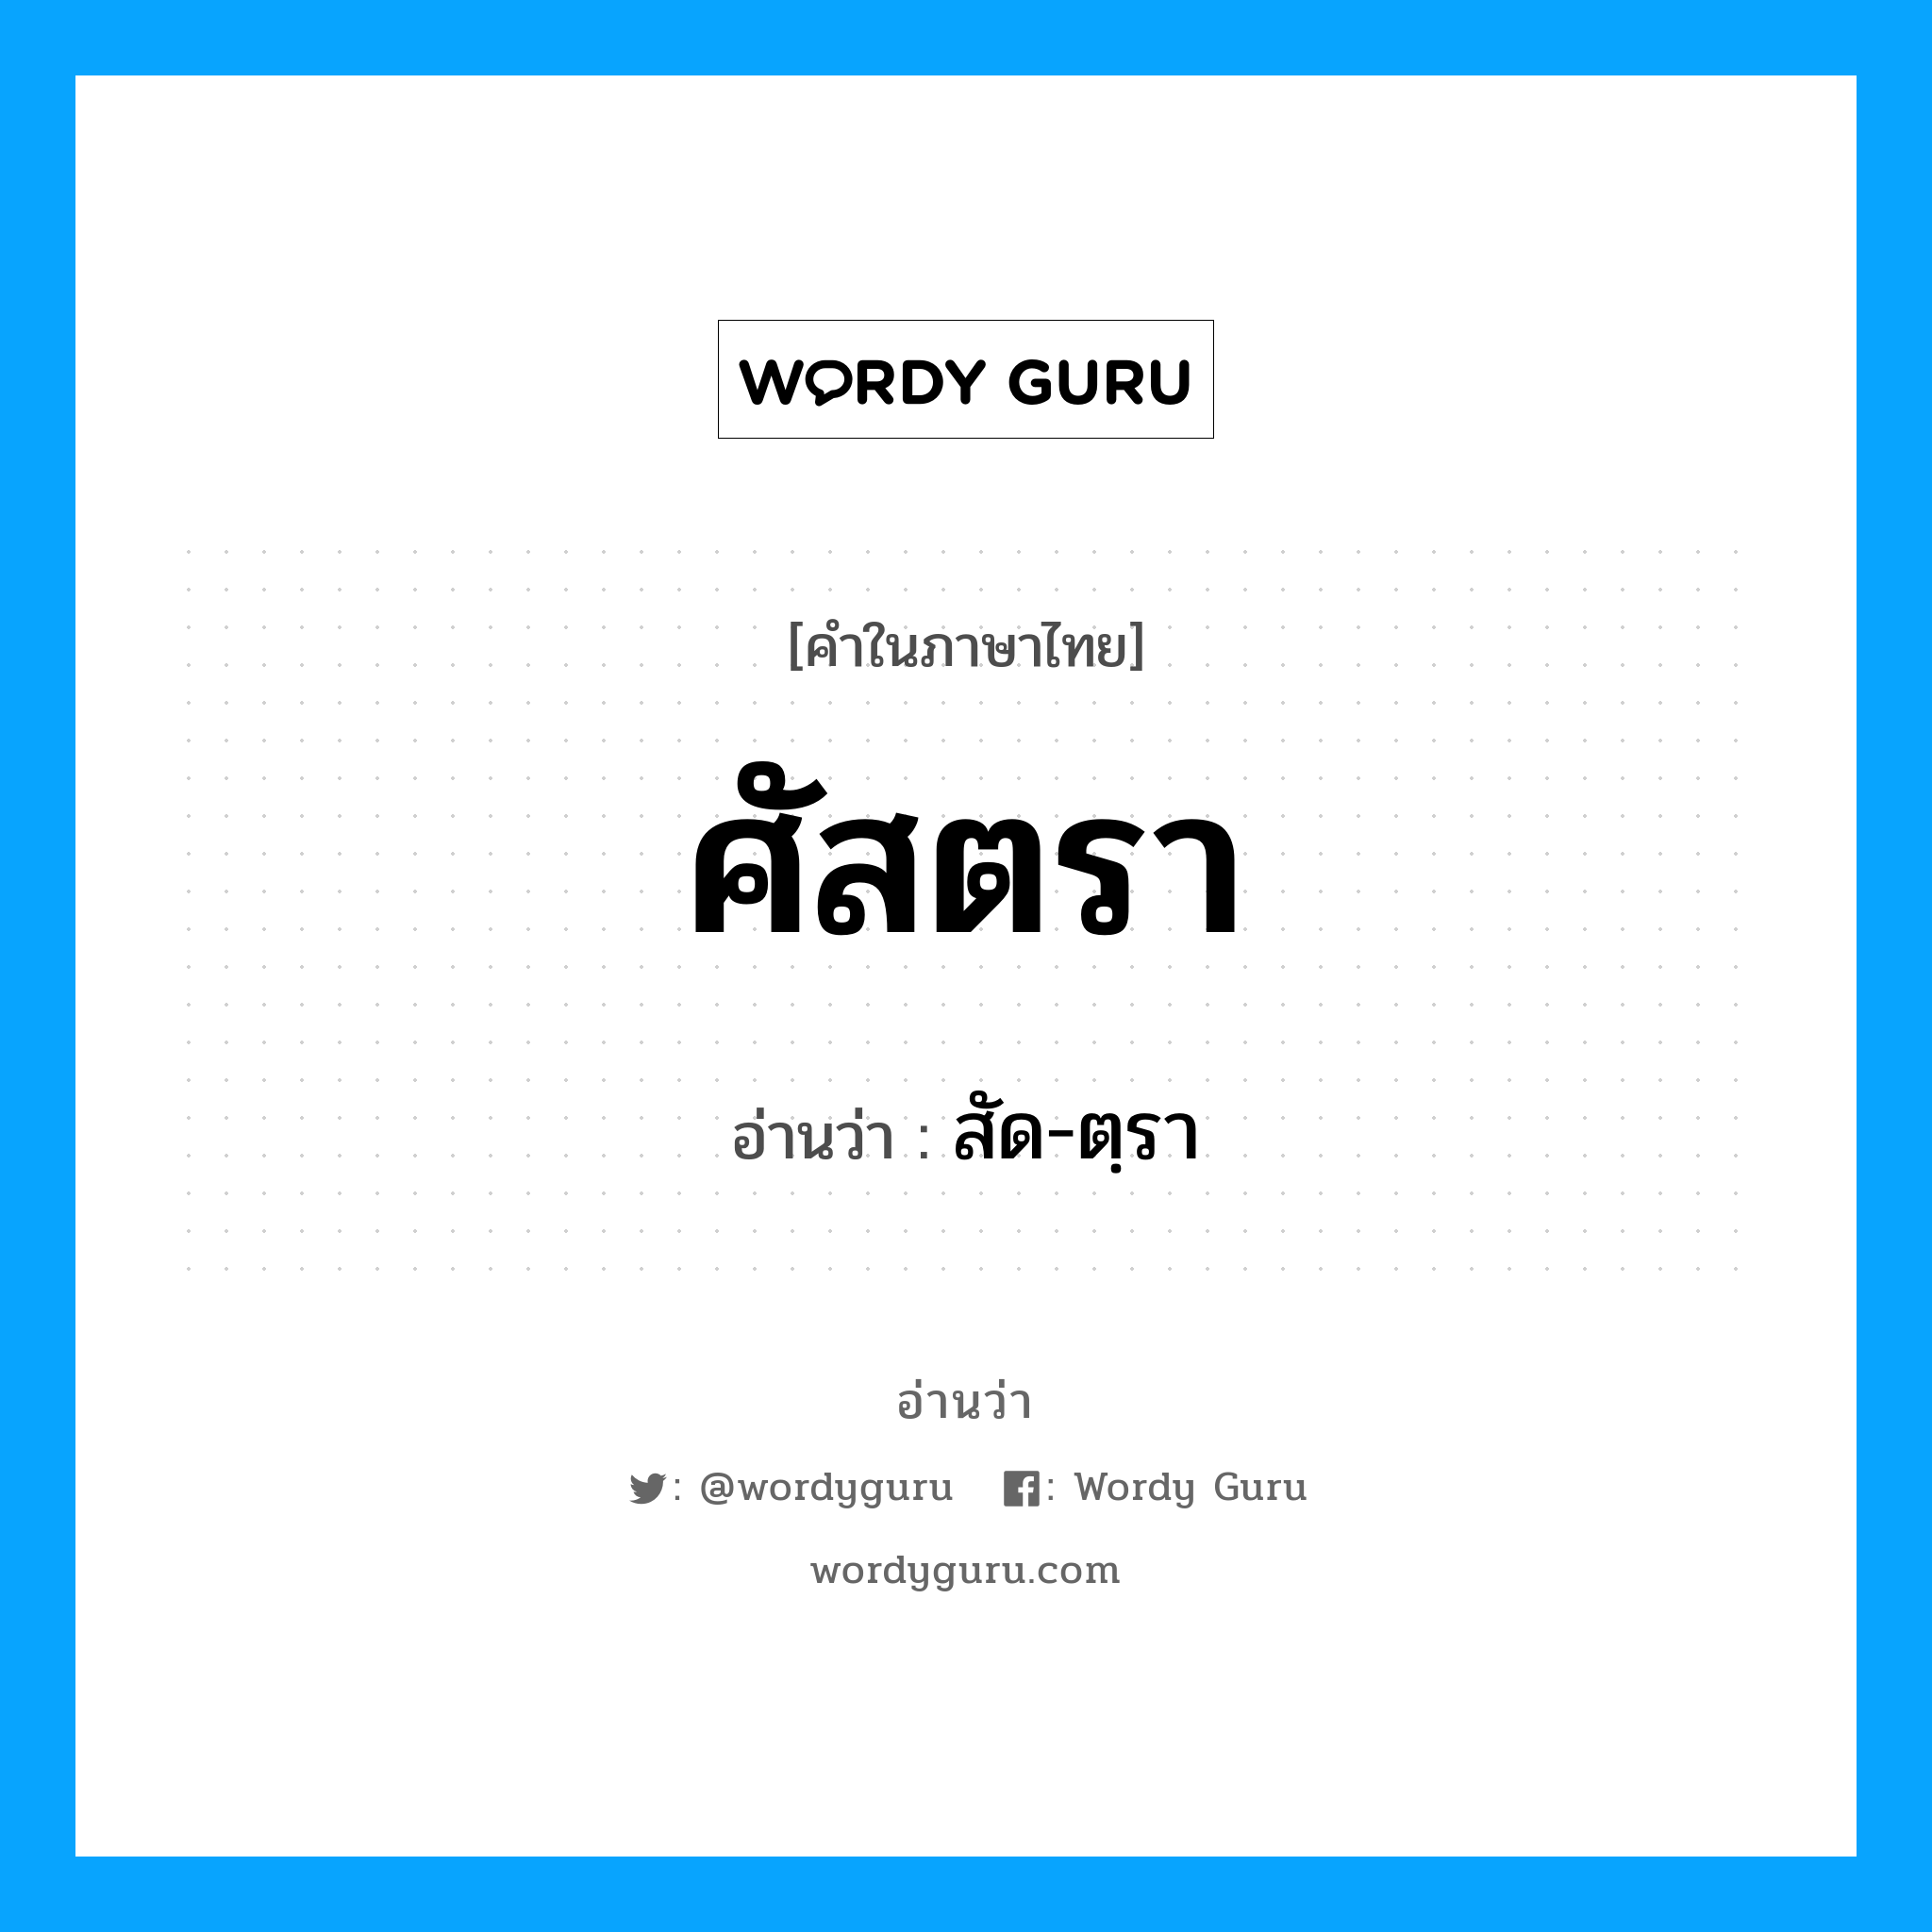 สัด-ตฺรา เป็นคำอ่านของคำไหน?, คำในภาษาไทย สัด-ตฺรา อ่านว่า ศัสตรา